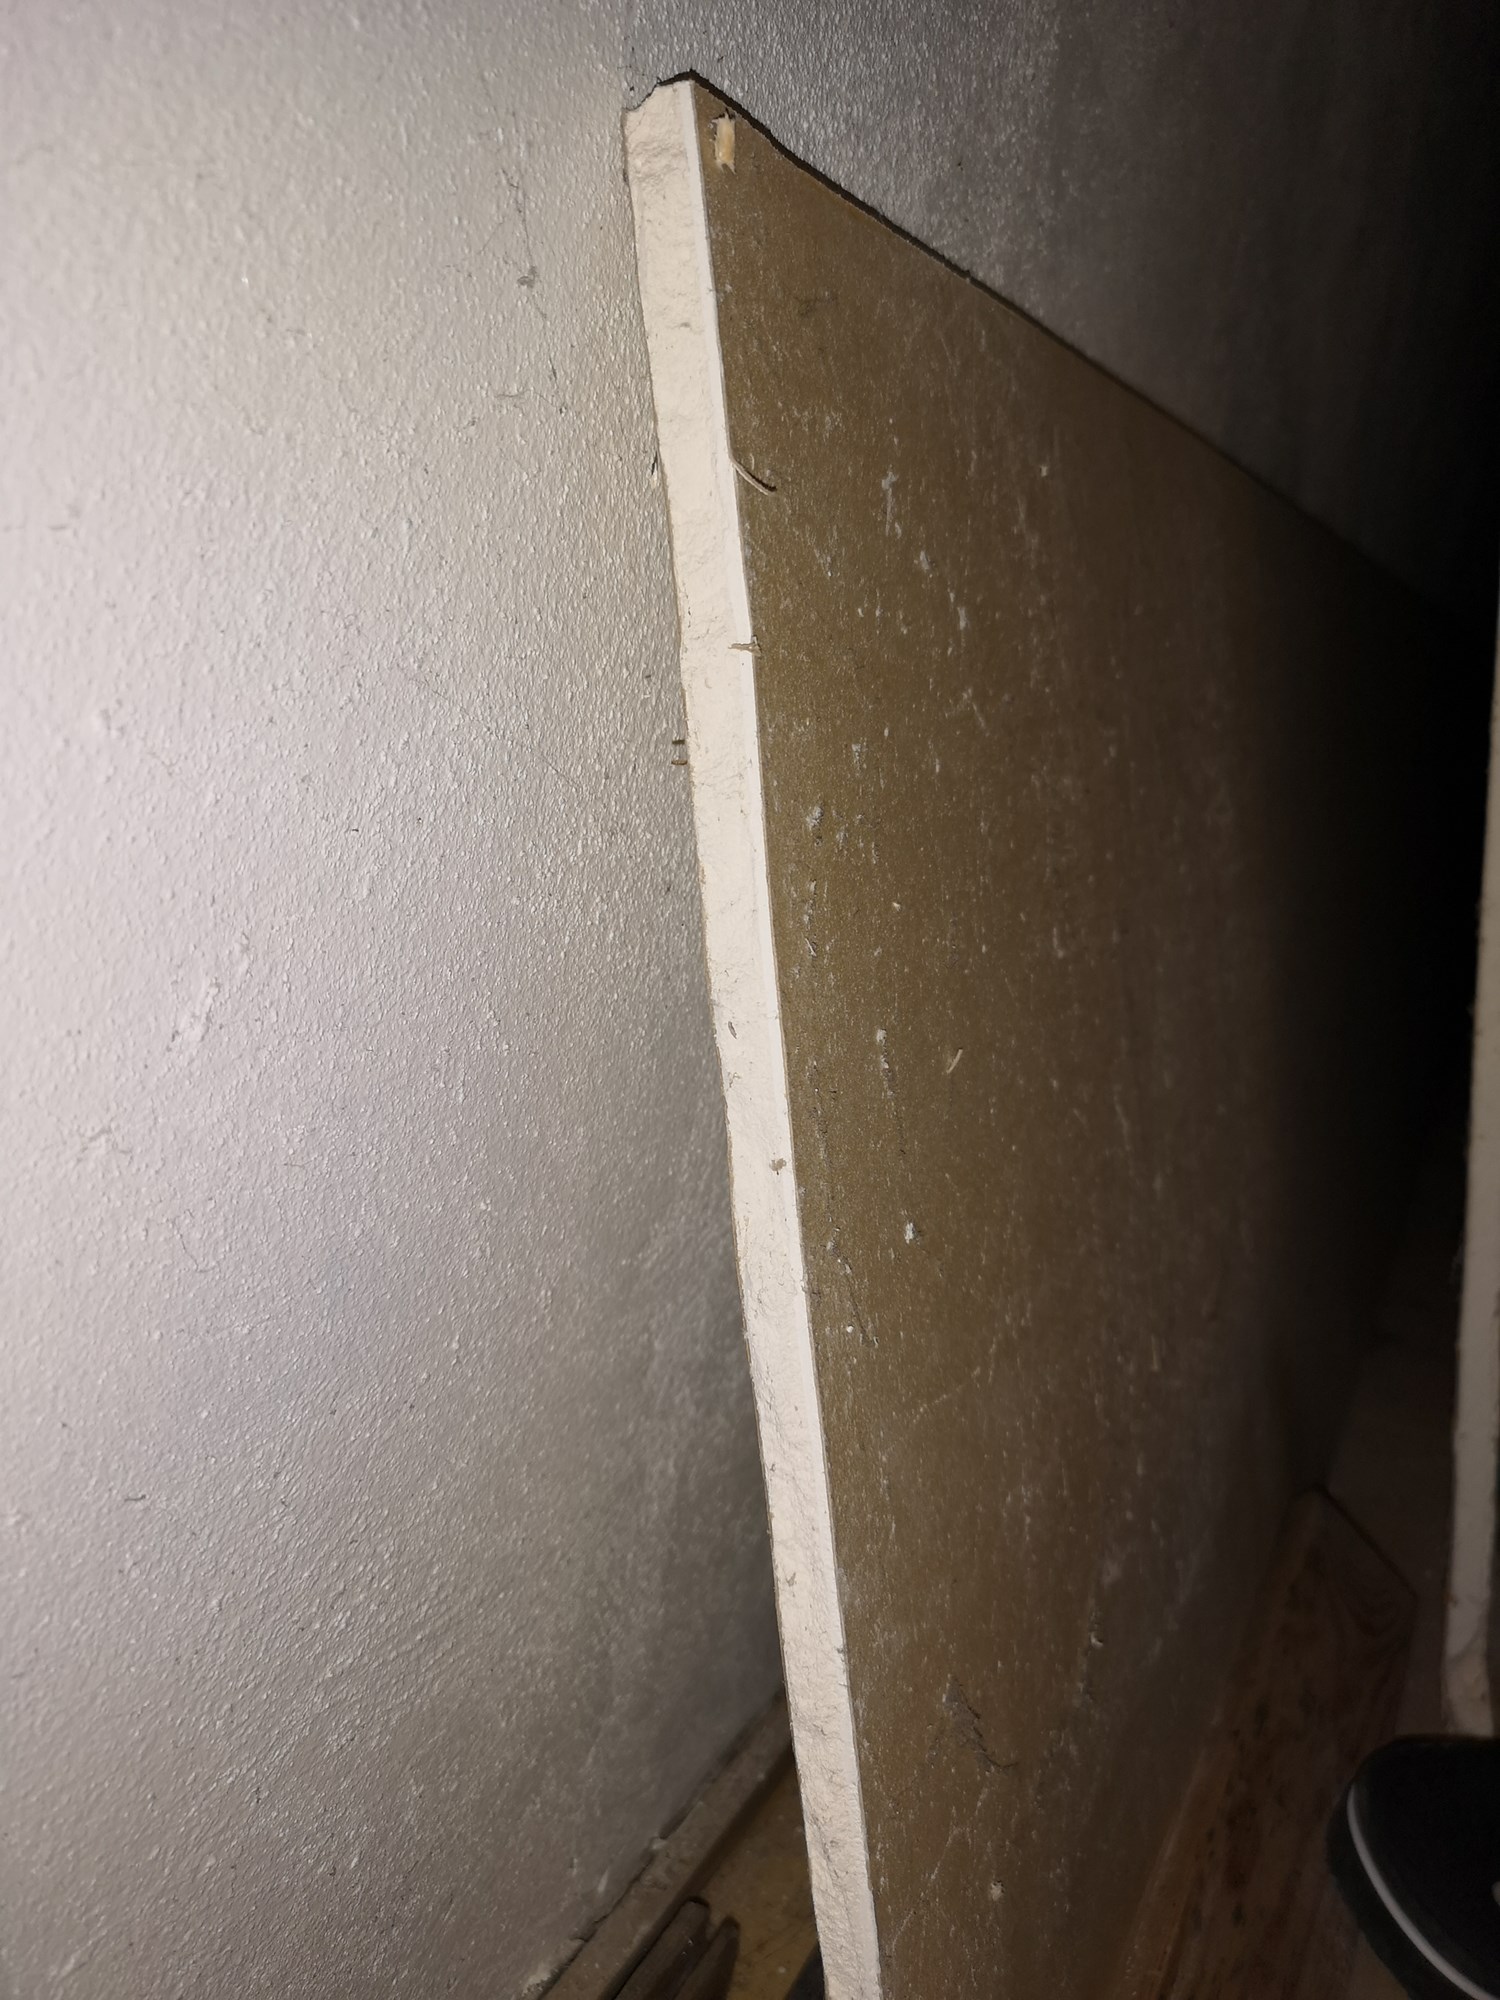 Jeg har funnet noen mistenkelige plater, kan det være asbest i dem? - IMG_20180928_104151.jpg - Landlord